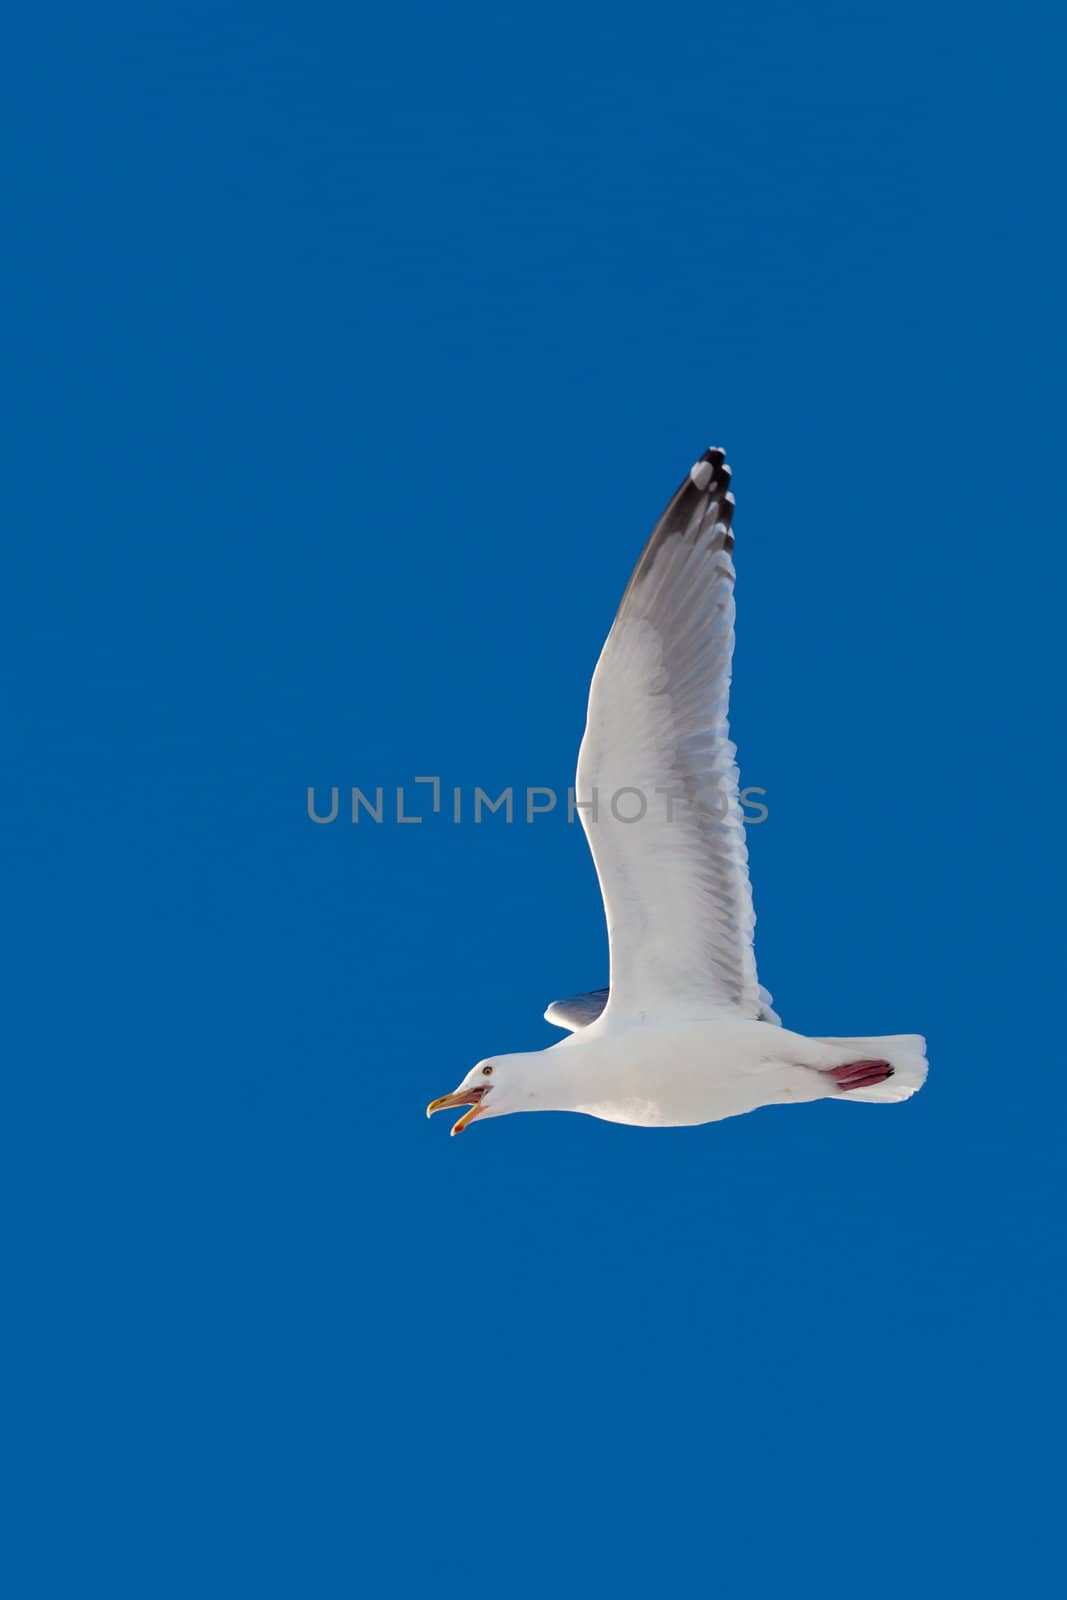 Calling herring gull flying in blue sky by PiLens